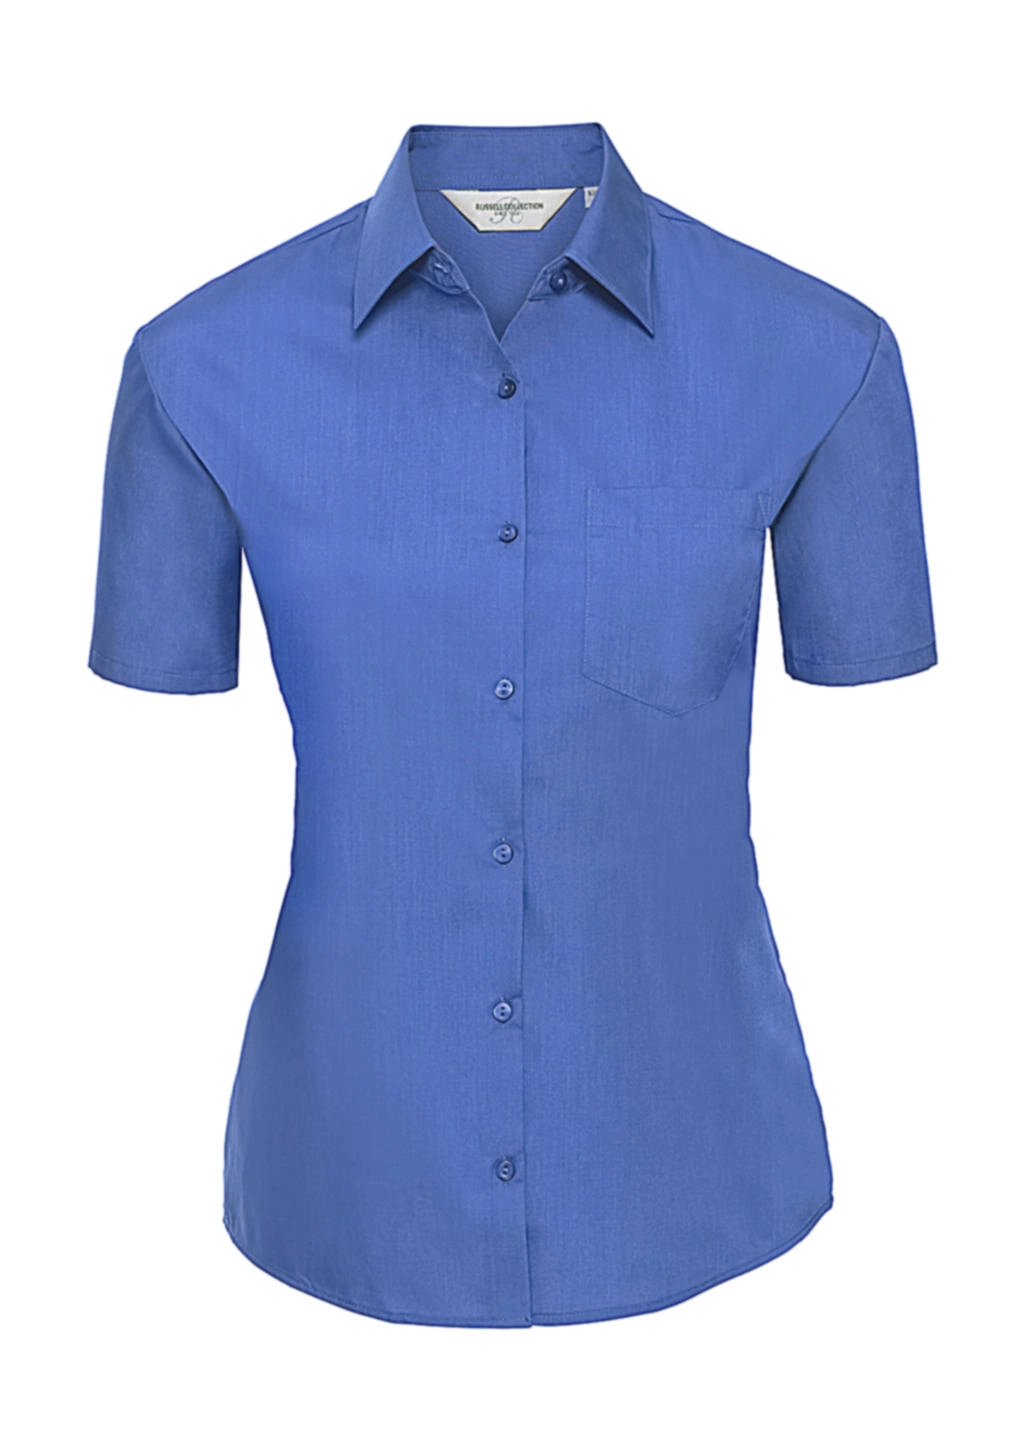 Ladies` Poplin Shirt zum Besticken und Bedrucken in der Farbe Corporate Blue mit Ihren Logo, Schriftzug oder Motiv.